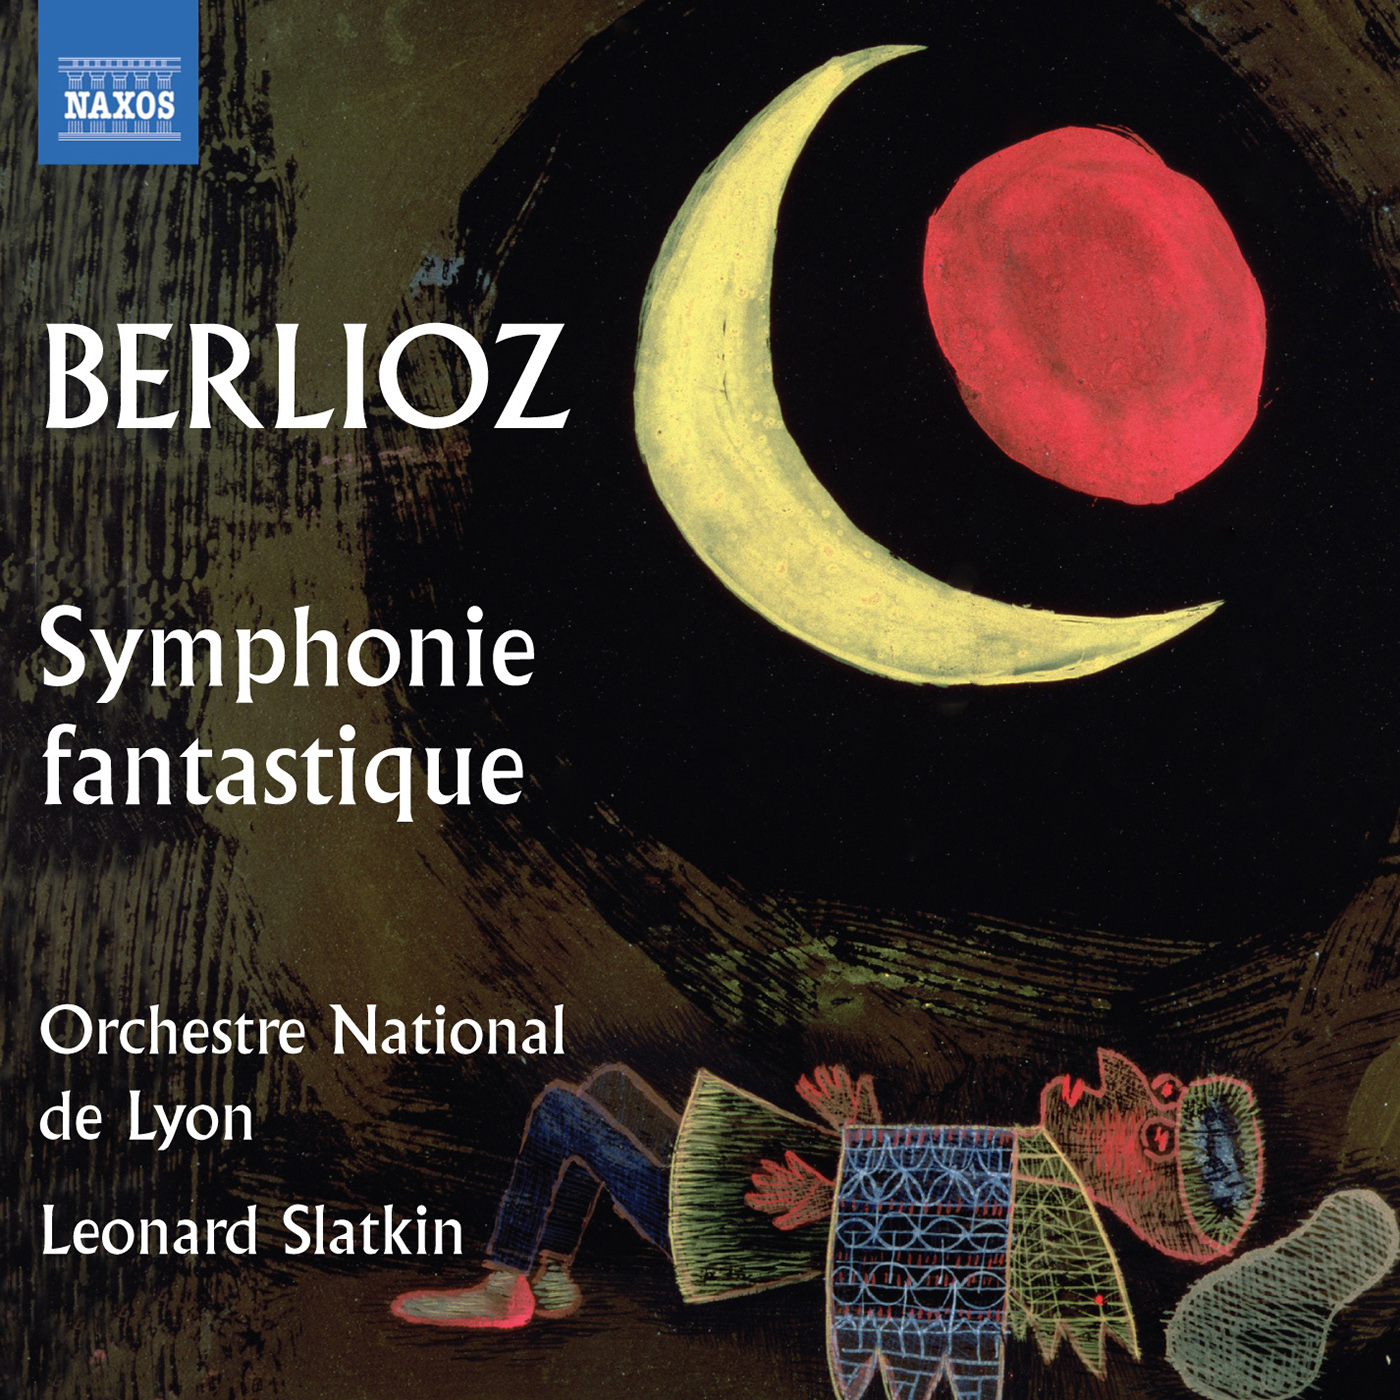 BERLIOZ, H.: Symphonie fantastique / Le corsaire (Lyon National Orchestra, Slatkin)